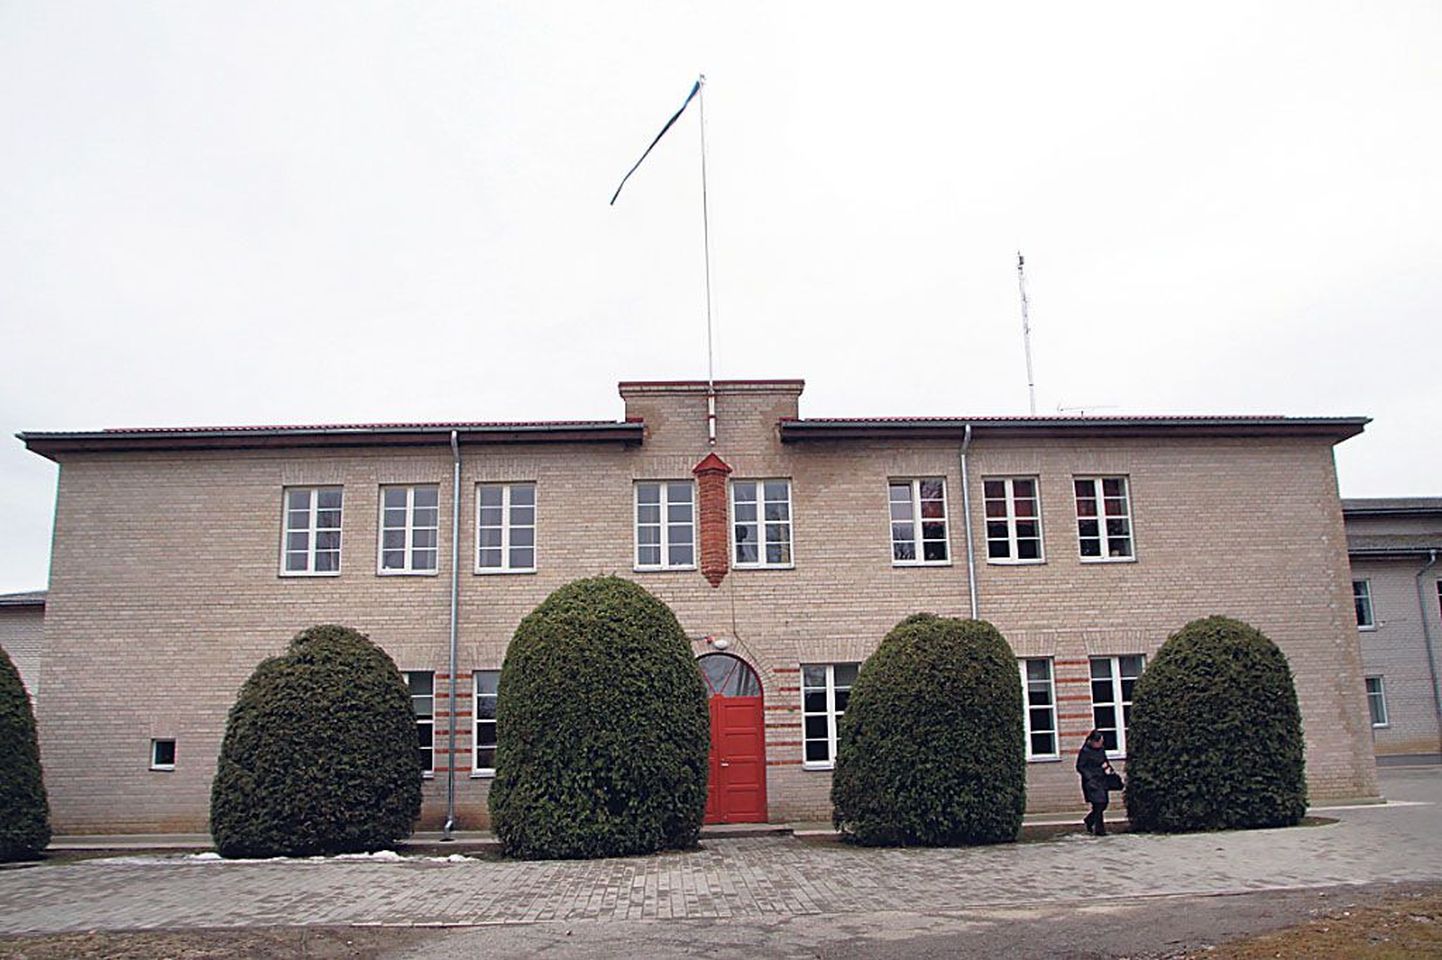 Pärnumaal tegevuse lõpetavate koolide nimekirja jätkab Viira kool, auväärne 1858. aastal asutatud õppeasutus.